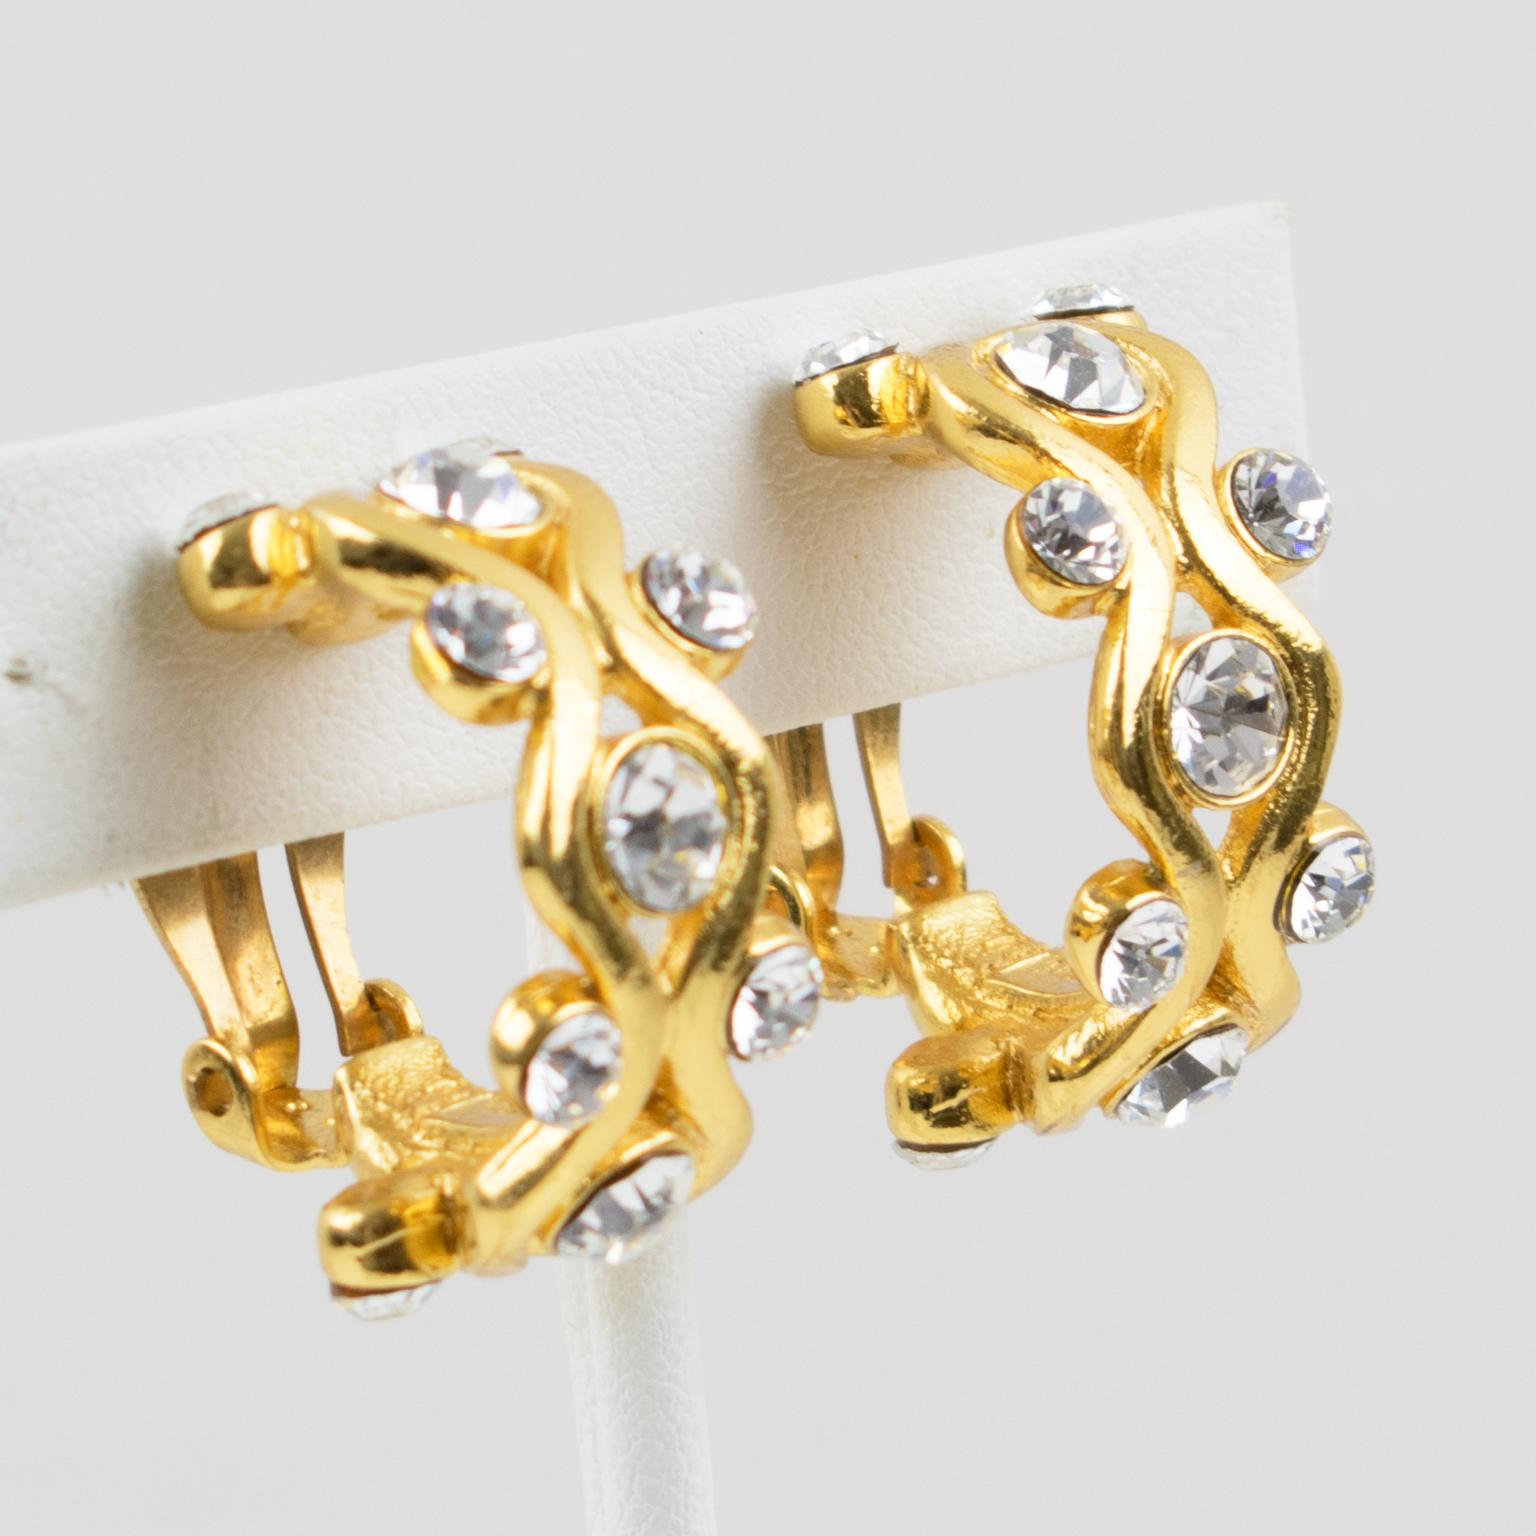 Diese bezaubernden Yves Saint Laurent YSL Paris Ohrclips haben eine dimensionale, halbhohe Form aus glänzendem, vergoldetem Metall und sind mit Strasssteinen in klarem Kristall verziert. Das 